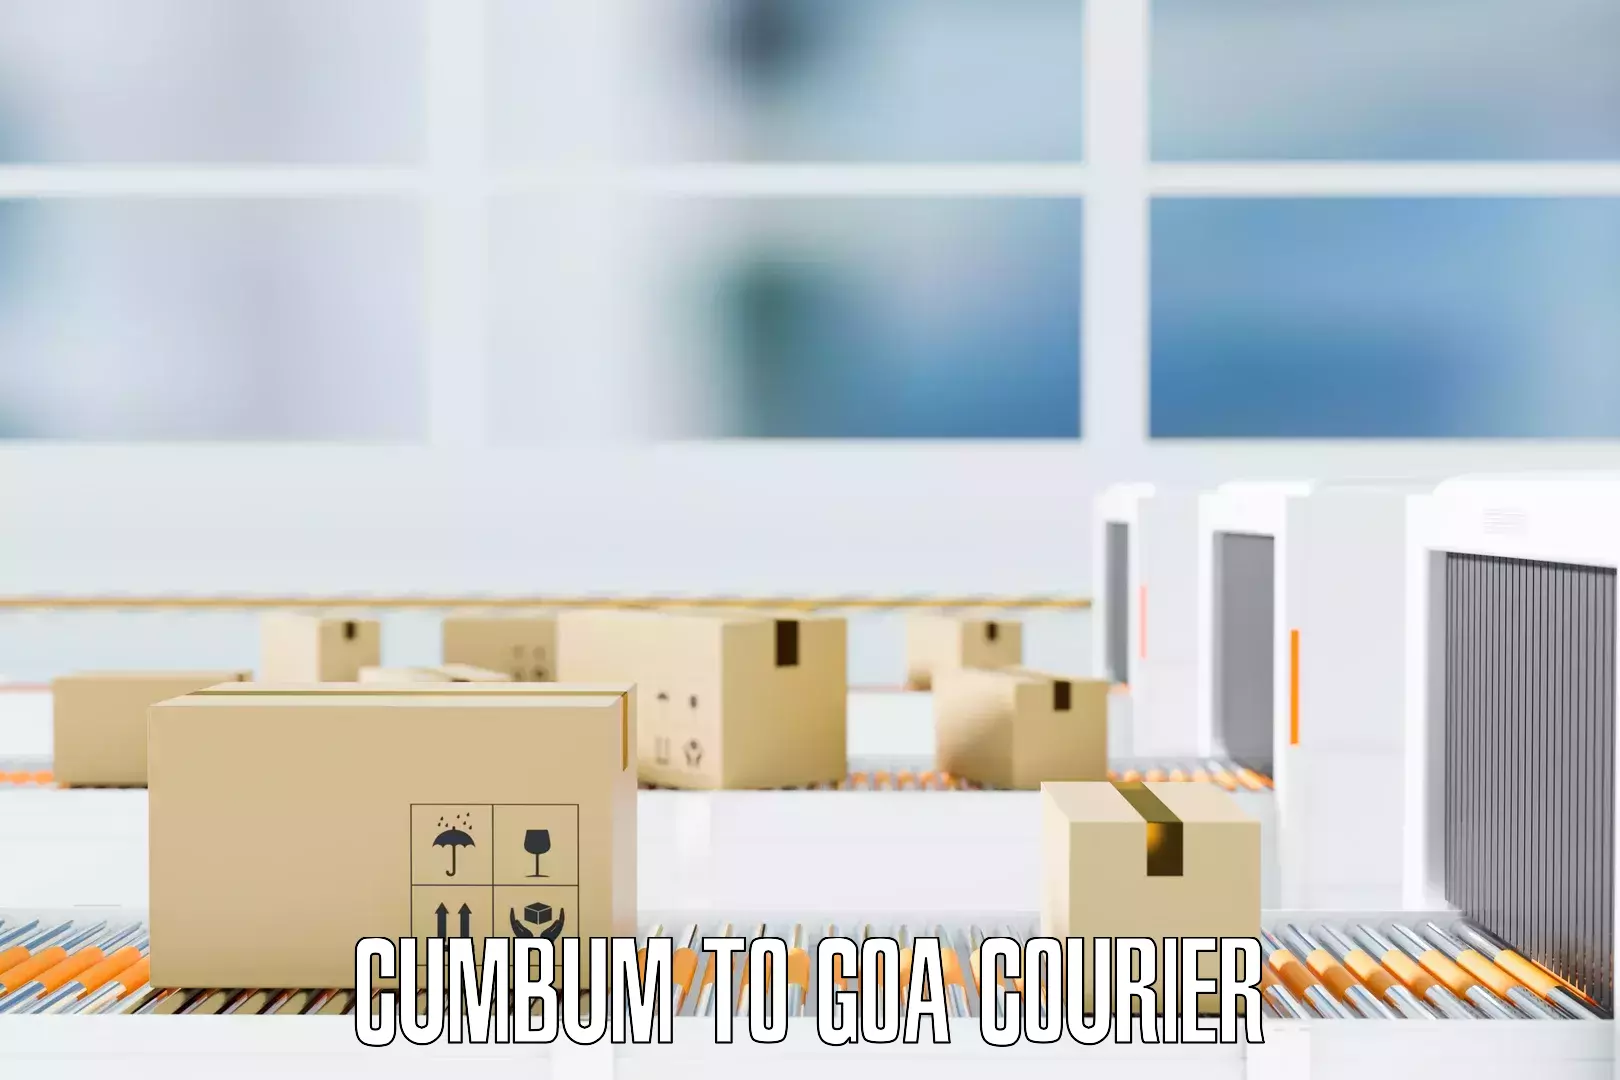 Premium moving services Cumbum to Goa University